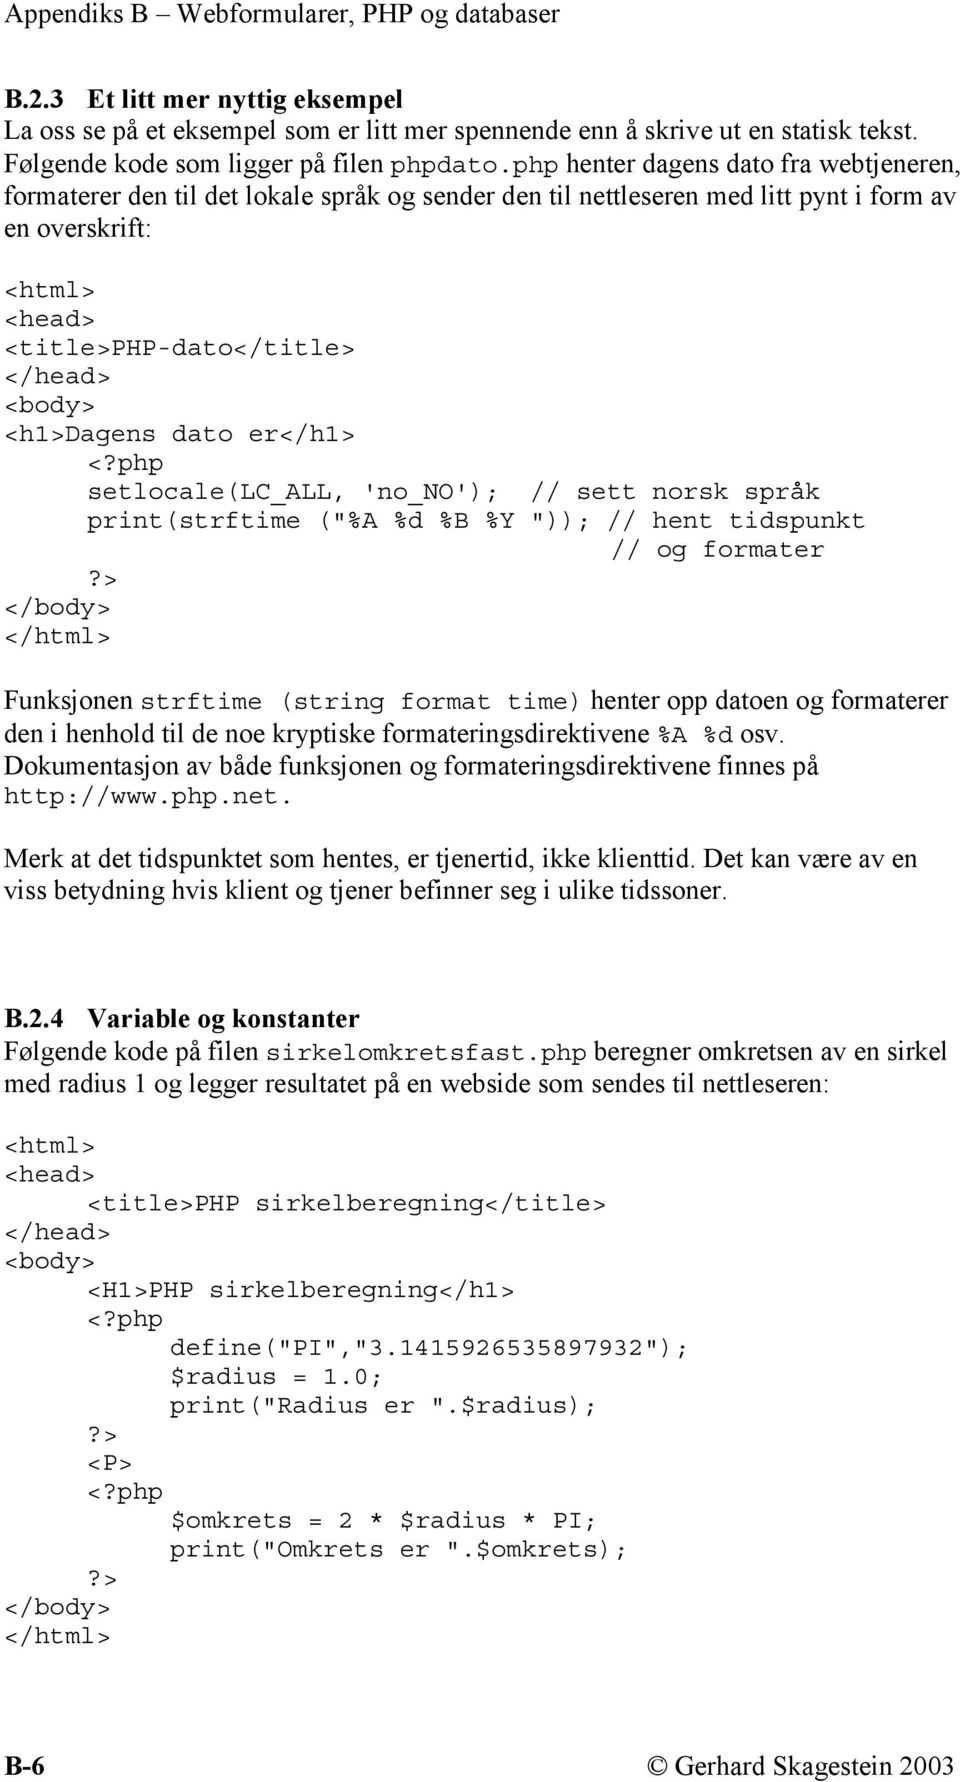 <h1>dagens dato er</h1> <?php setlocale(lc_all, 'no_no'); // sett norsk språk print(strftime ("%A %d %B %Y ")); // hent tidspunkt // og formater?